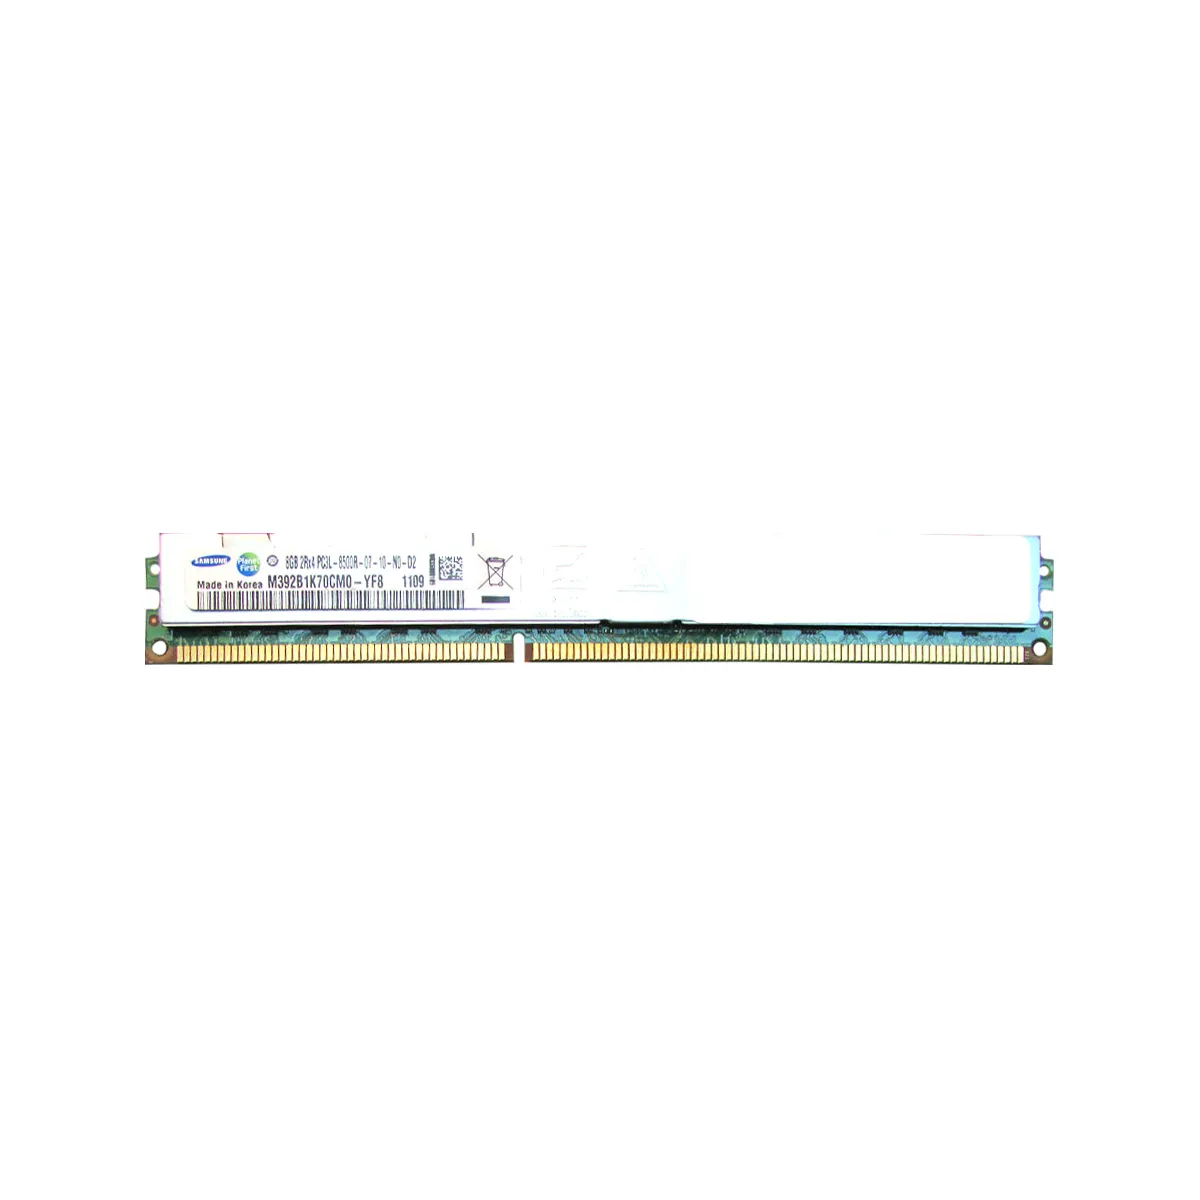 Samsung (M392B1K70CM0-YF8) - 8GB PC3L-8500R (2Rx4, DDR3-1066MHz) RAM